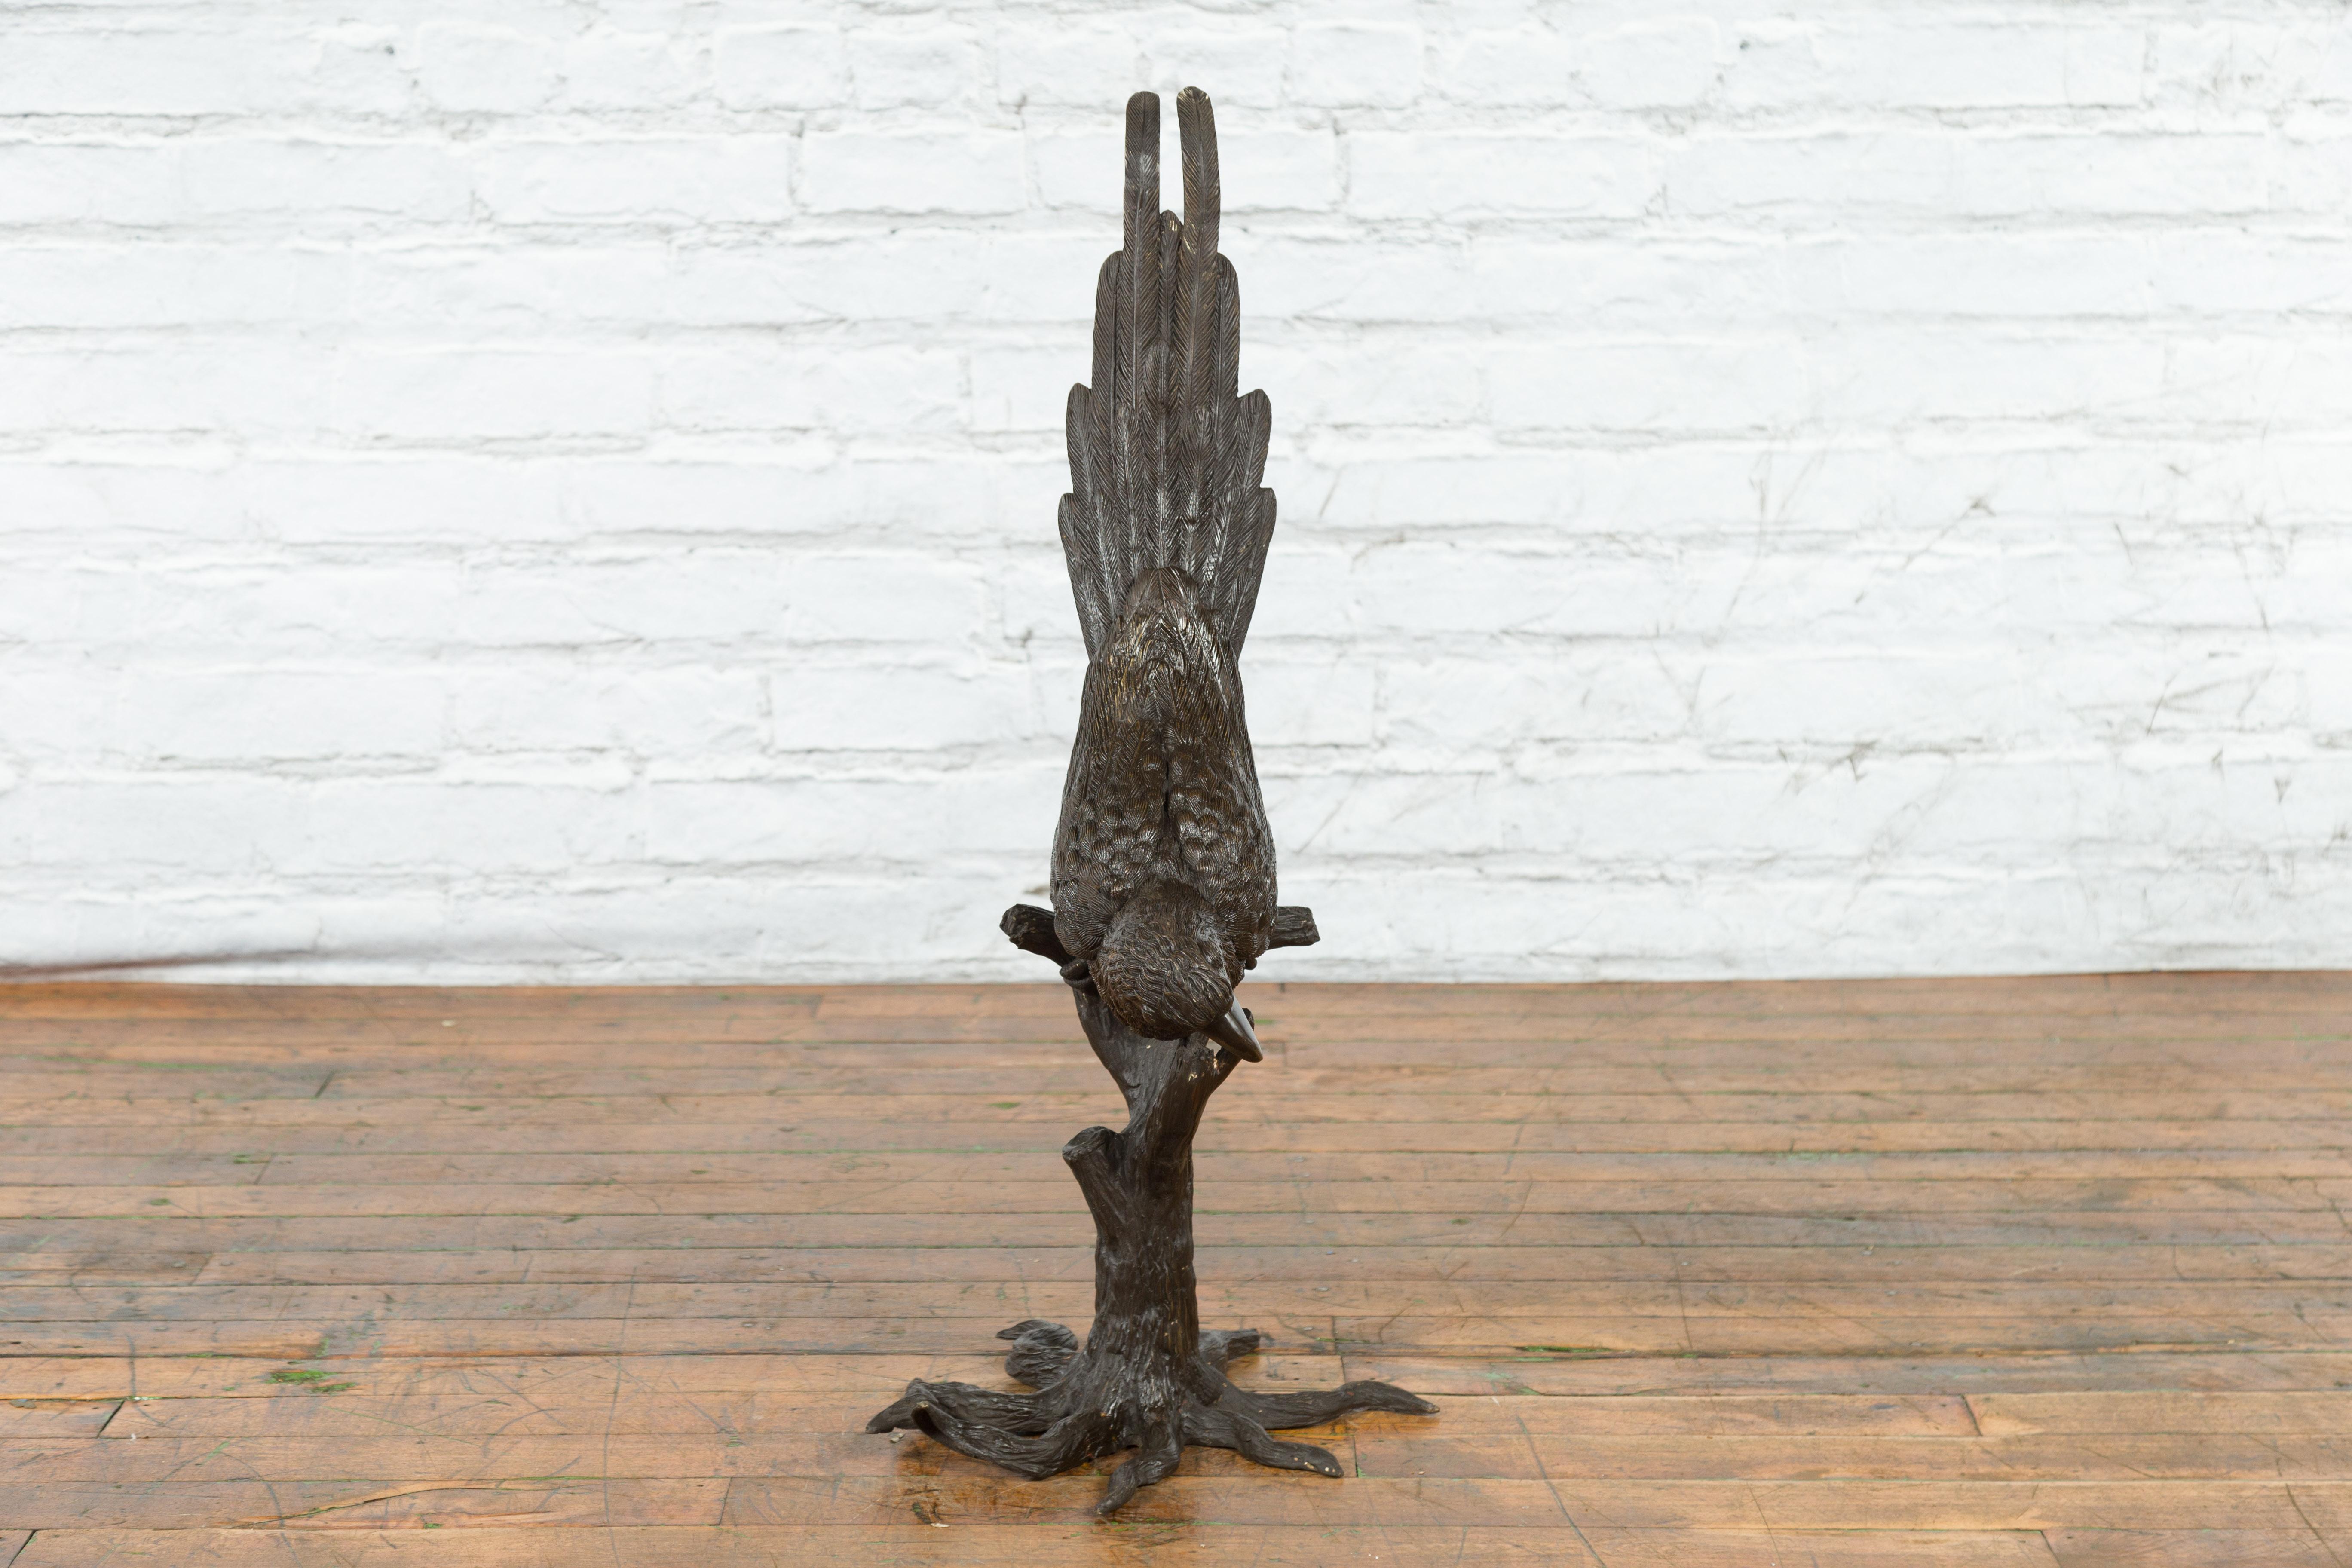 Statue en bronze coulée à la cire perdue d'un perroquet appuyé sur une branche d'arbre à la patine sombre. Créée selon la technique traditionnelle de la cire perdue (à la cire perdue) qui permet une grande précision et finesse dans les détails,